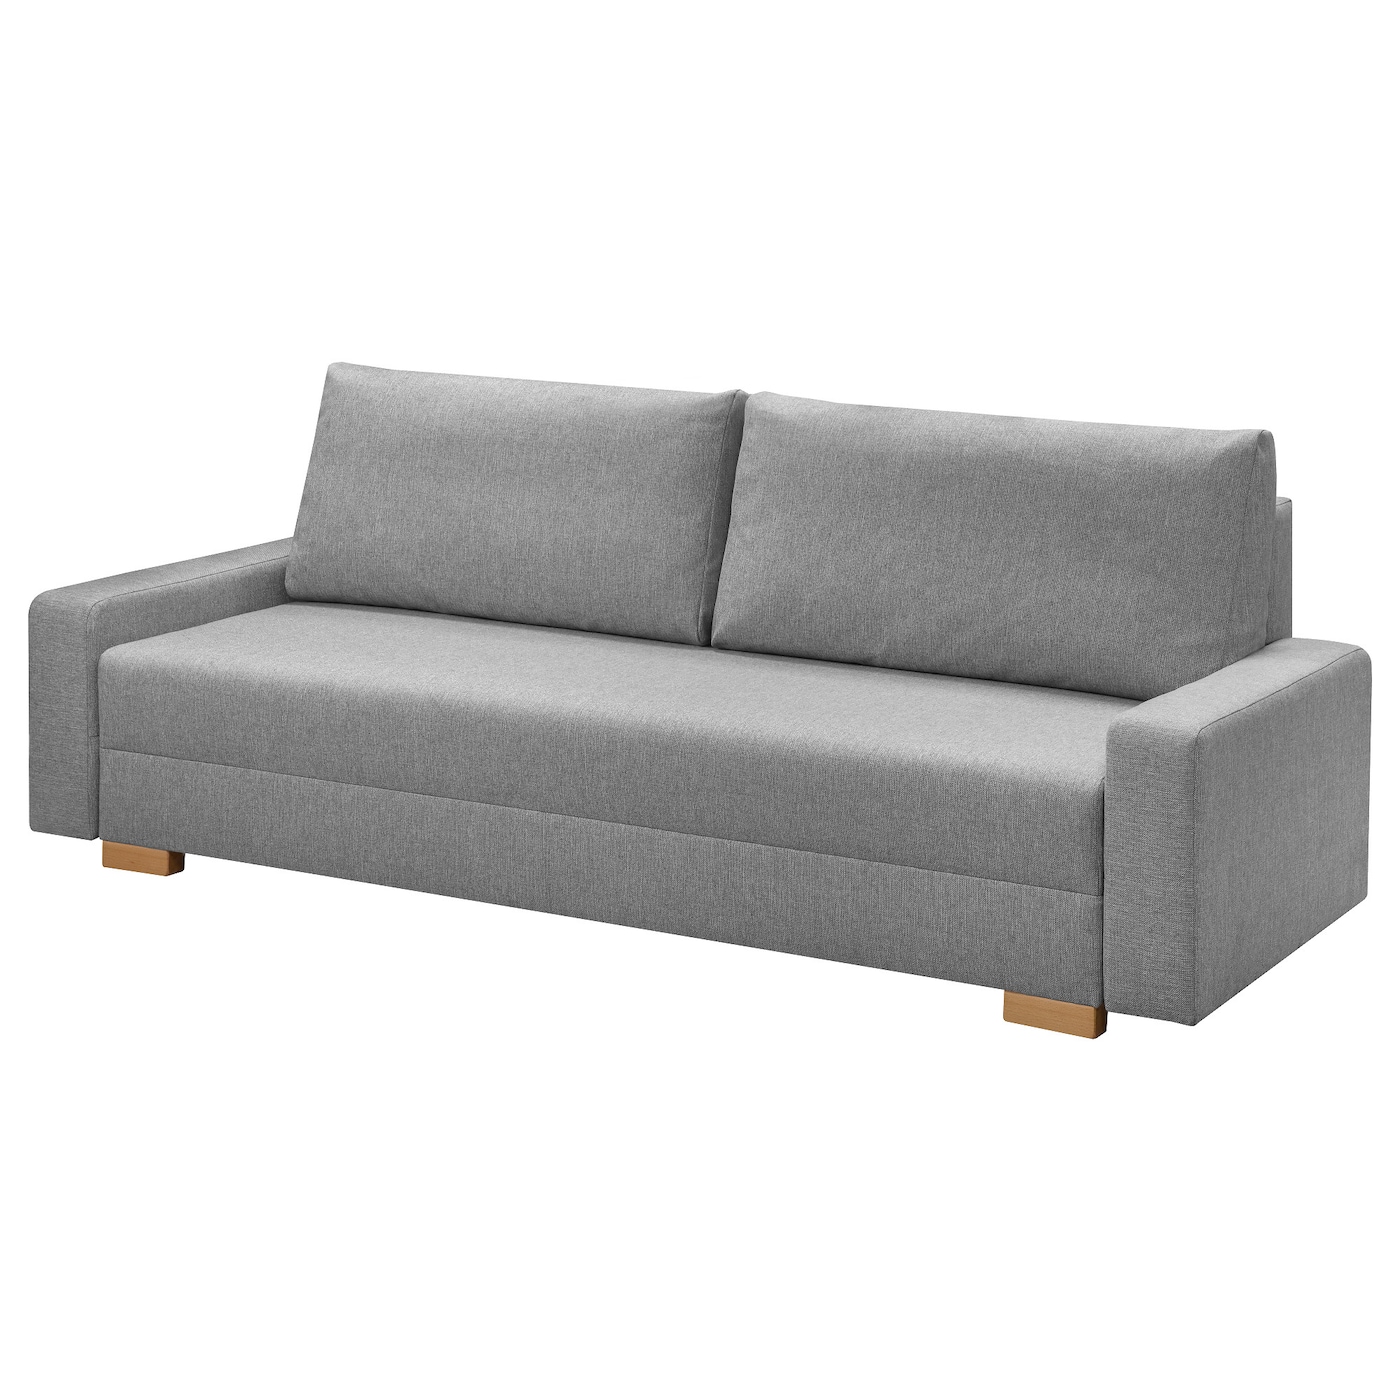 3-местный диван-кровать - IKEA GRÄLVIKEN/GRALVIKEN, 74x86x225см, светло-серый, ГРАЛВИКЕН ИКЕА